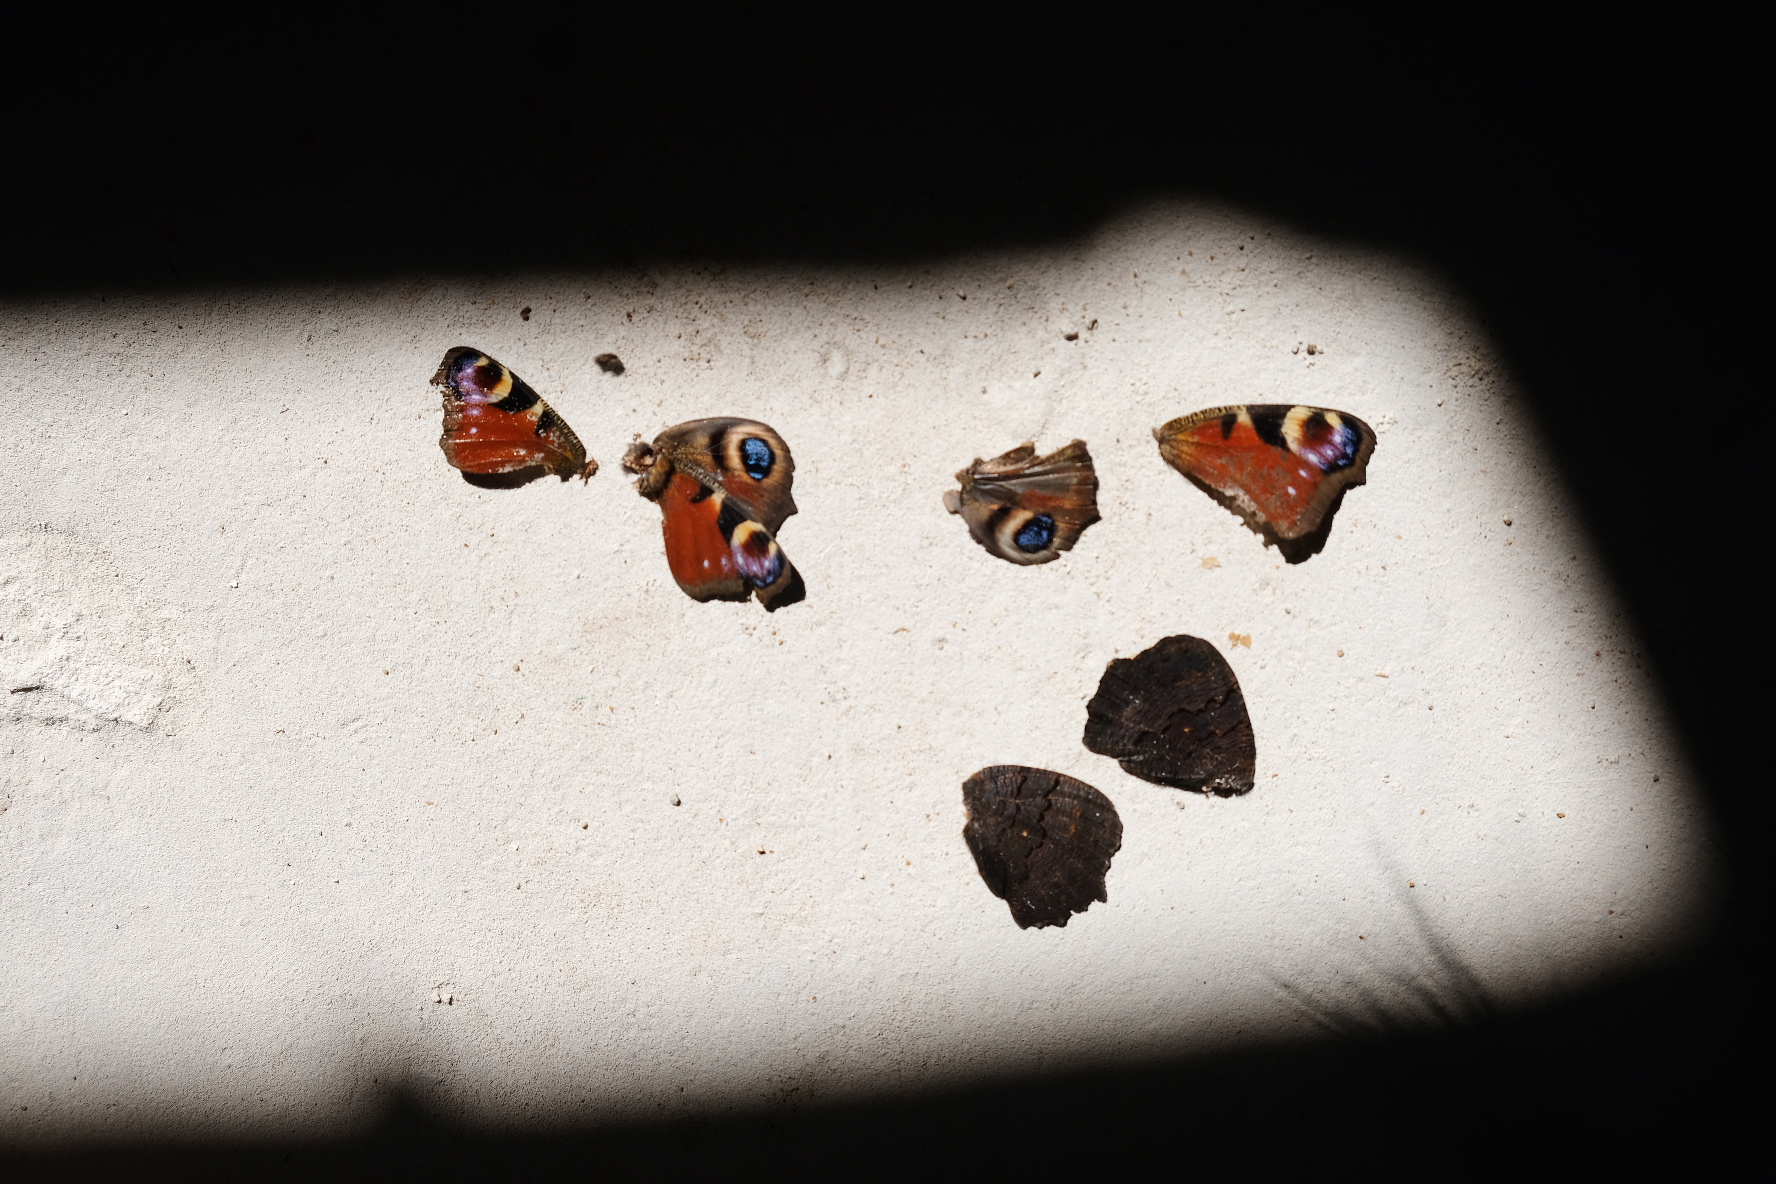 Foto van dagpauwoogvlinders op de vloer. De vlinders zijn roodbruin en hebben een heldere cirkel van blauw/geel op hun vleugels. De vlinders liggen op cement in het licht. Alles er omheen is zwart.